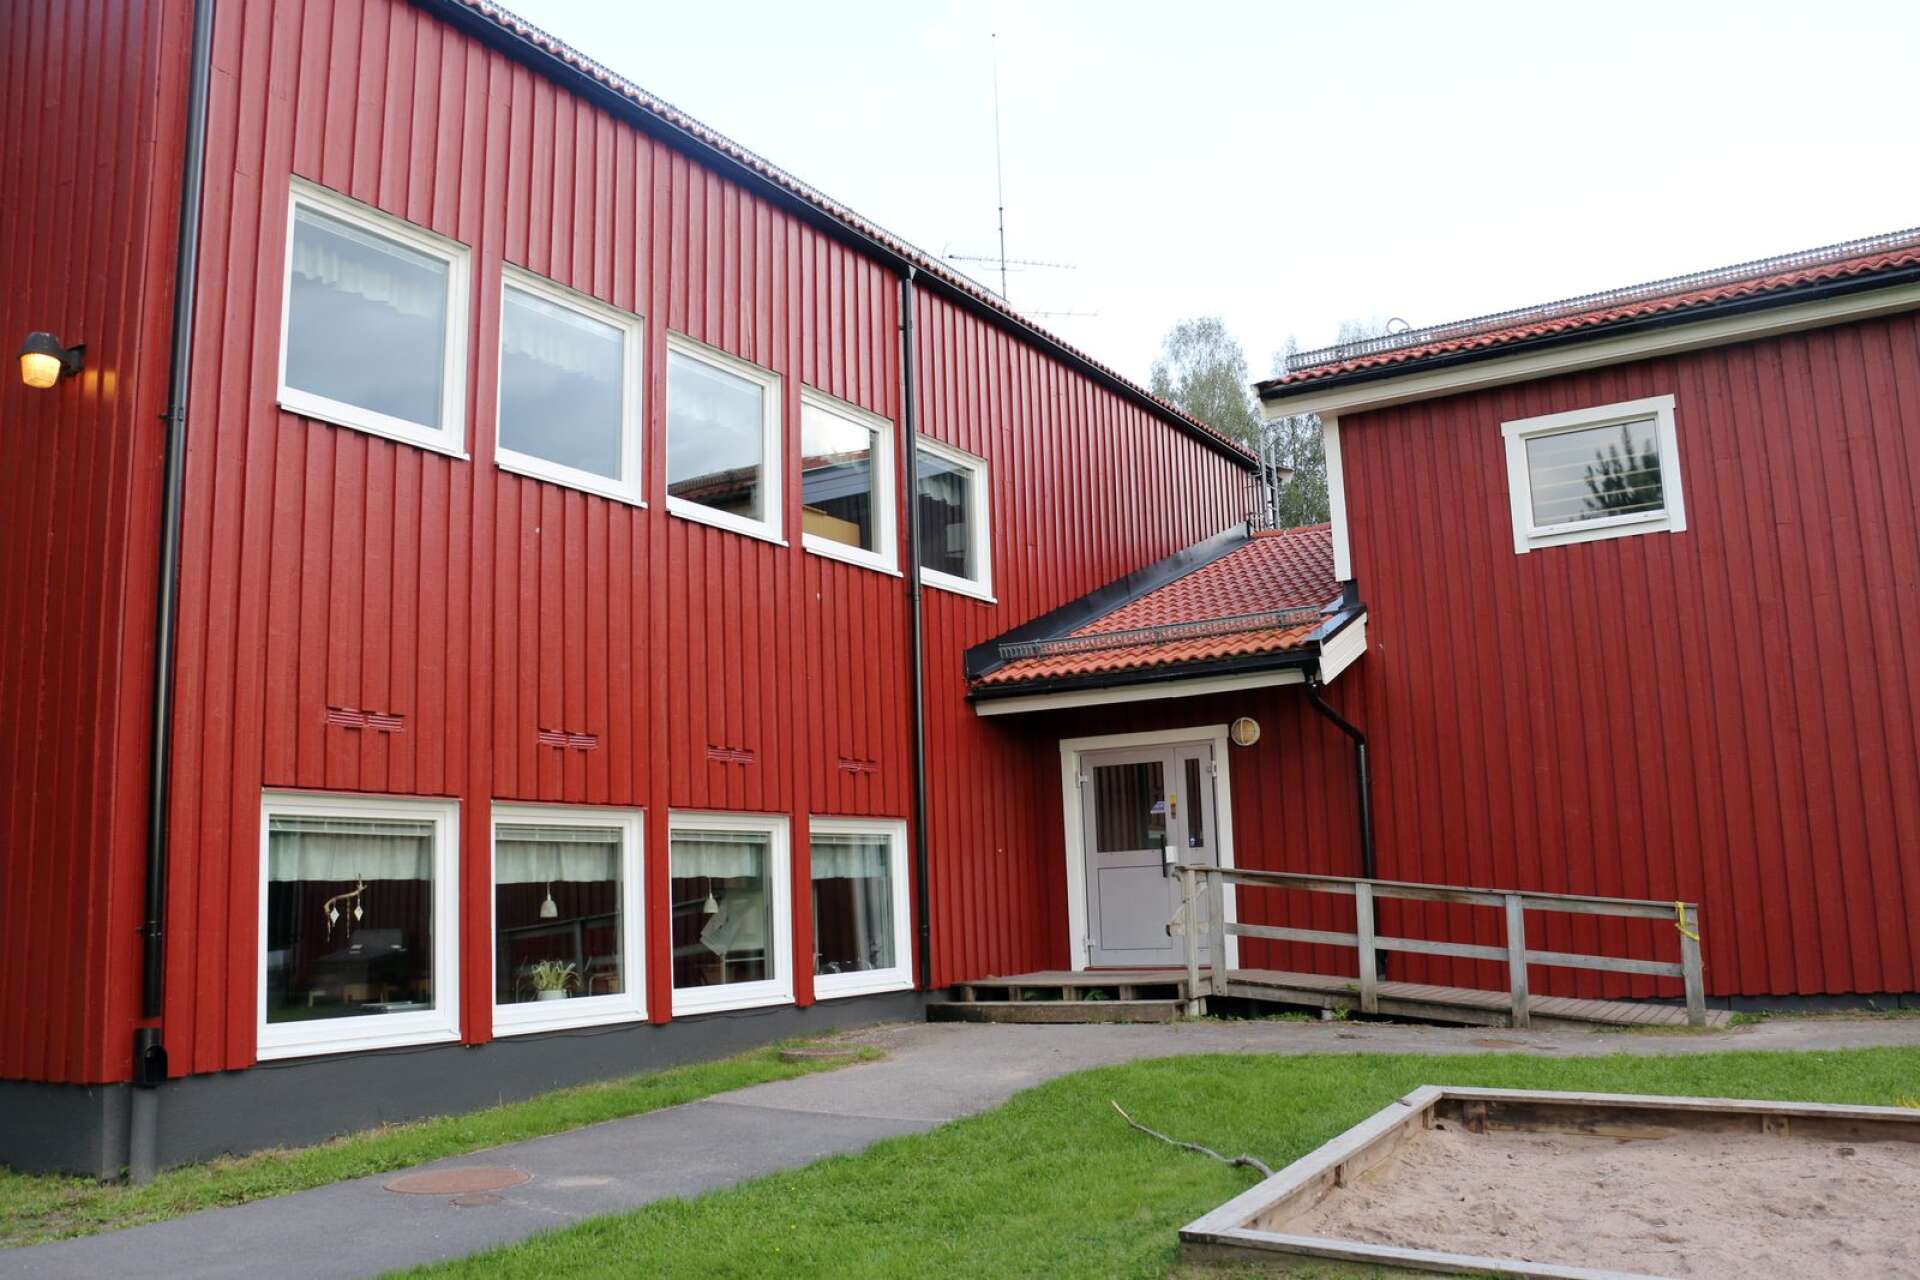 Om man lade ner de tre glesbygdsskolorna i Brattfors (bilden), Nordmark och Nykroppa skulle möjligheten öka att erbjuda samtliga elever undervisning av behöriga pedagoger, skriver debattören.